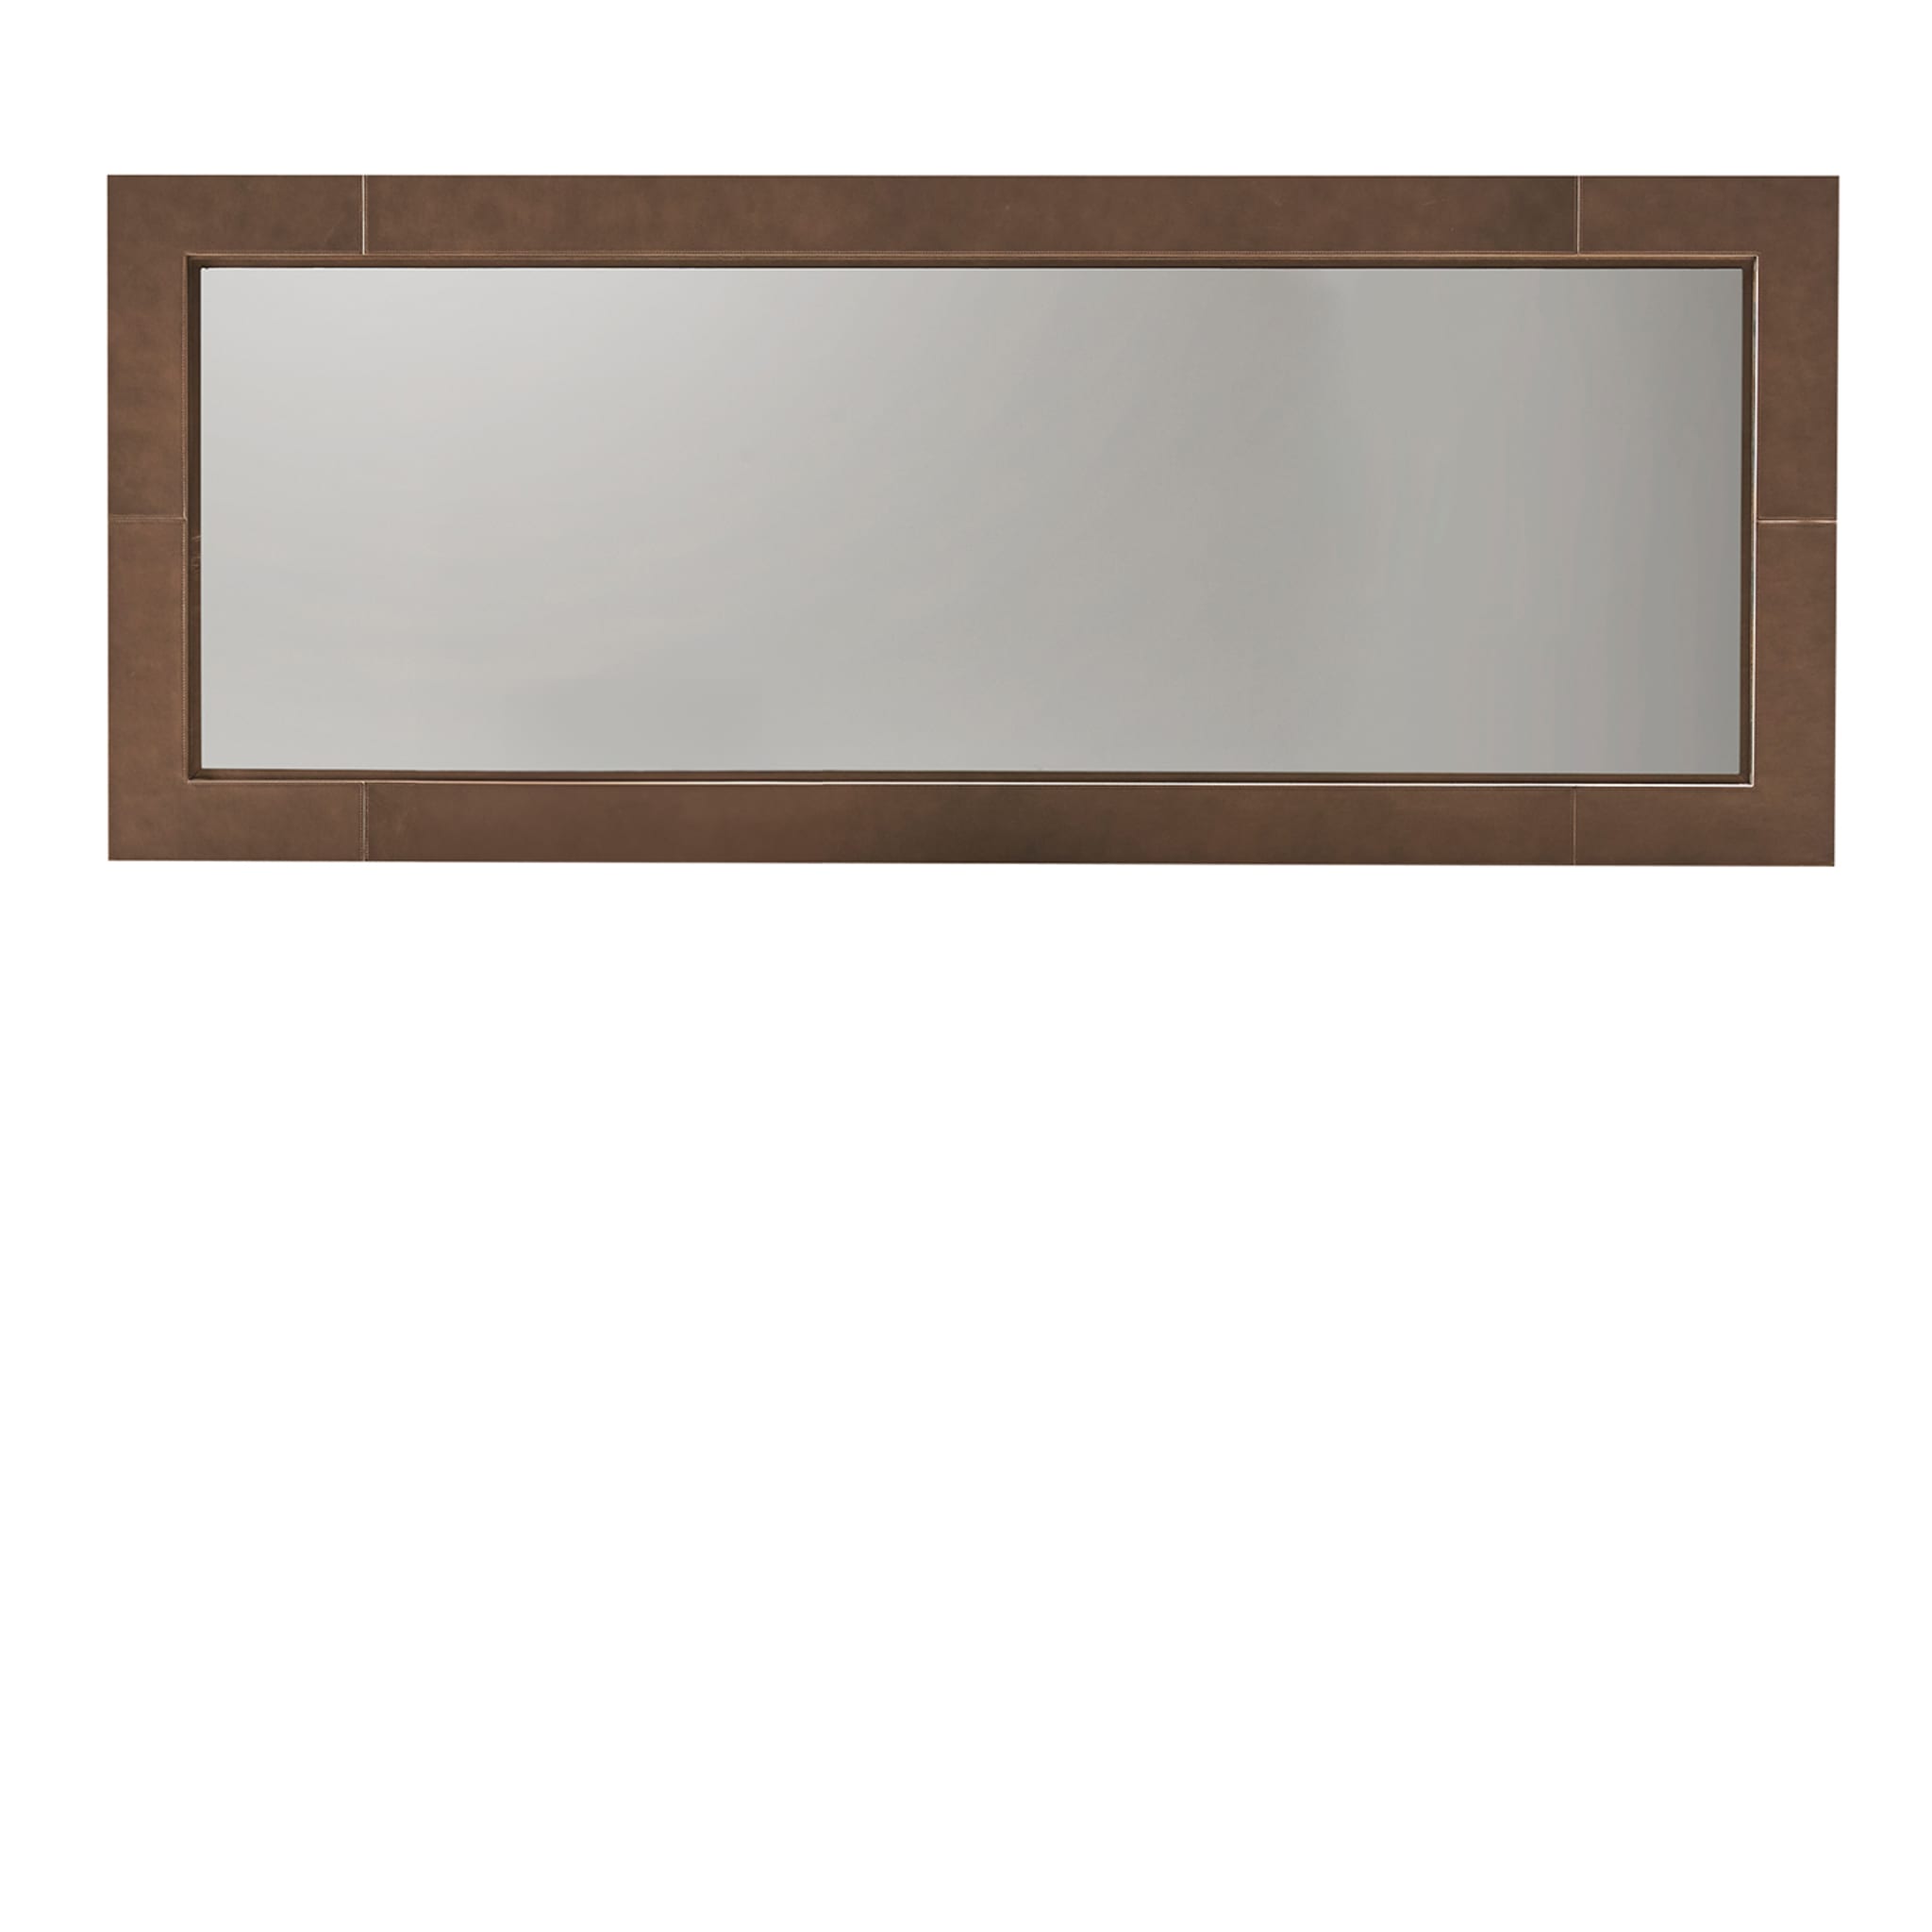 Volterra Rectangular Brown Leather Mirror - Main view